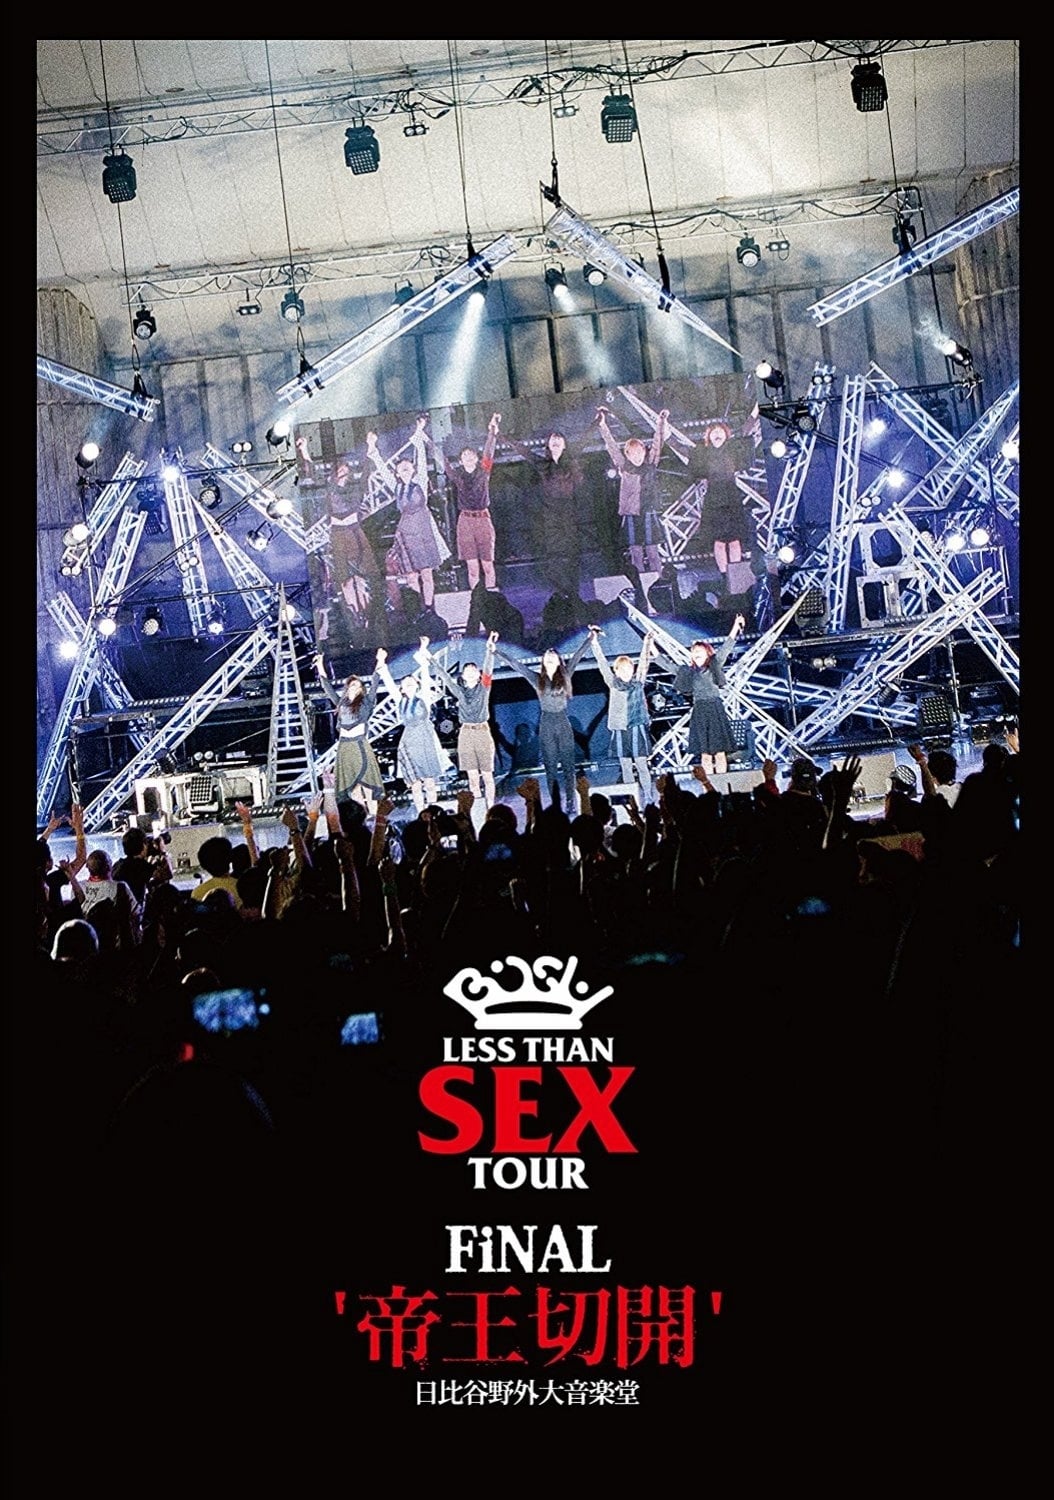 Bish: Less Than Sex Tour Final "Teiousekkai"